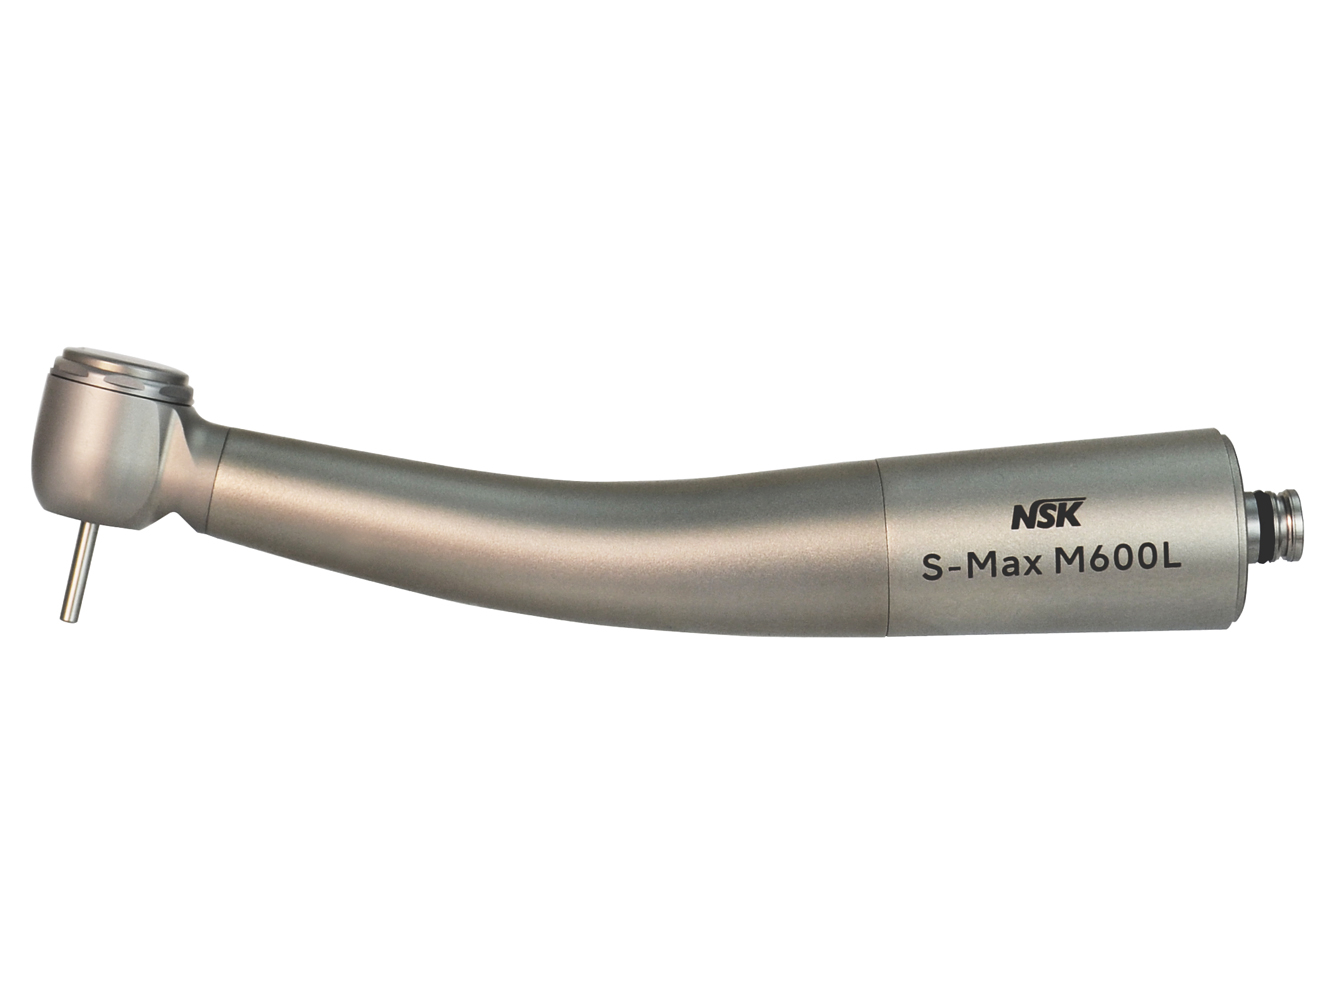 M600L Стоматологический турбинный наконечник серии S-Max, с головкой типа Std., керамические подшипники, NSK (Япония)